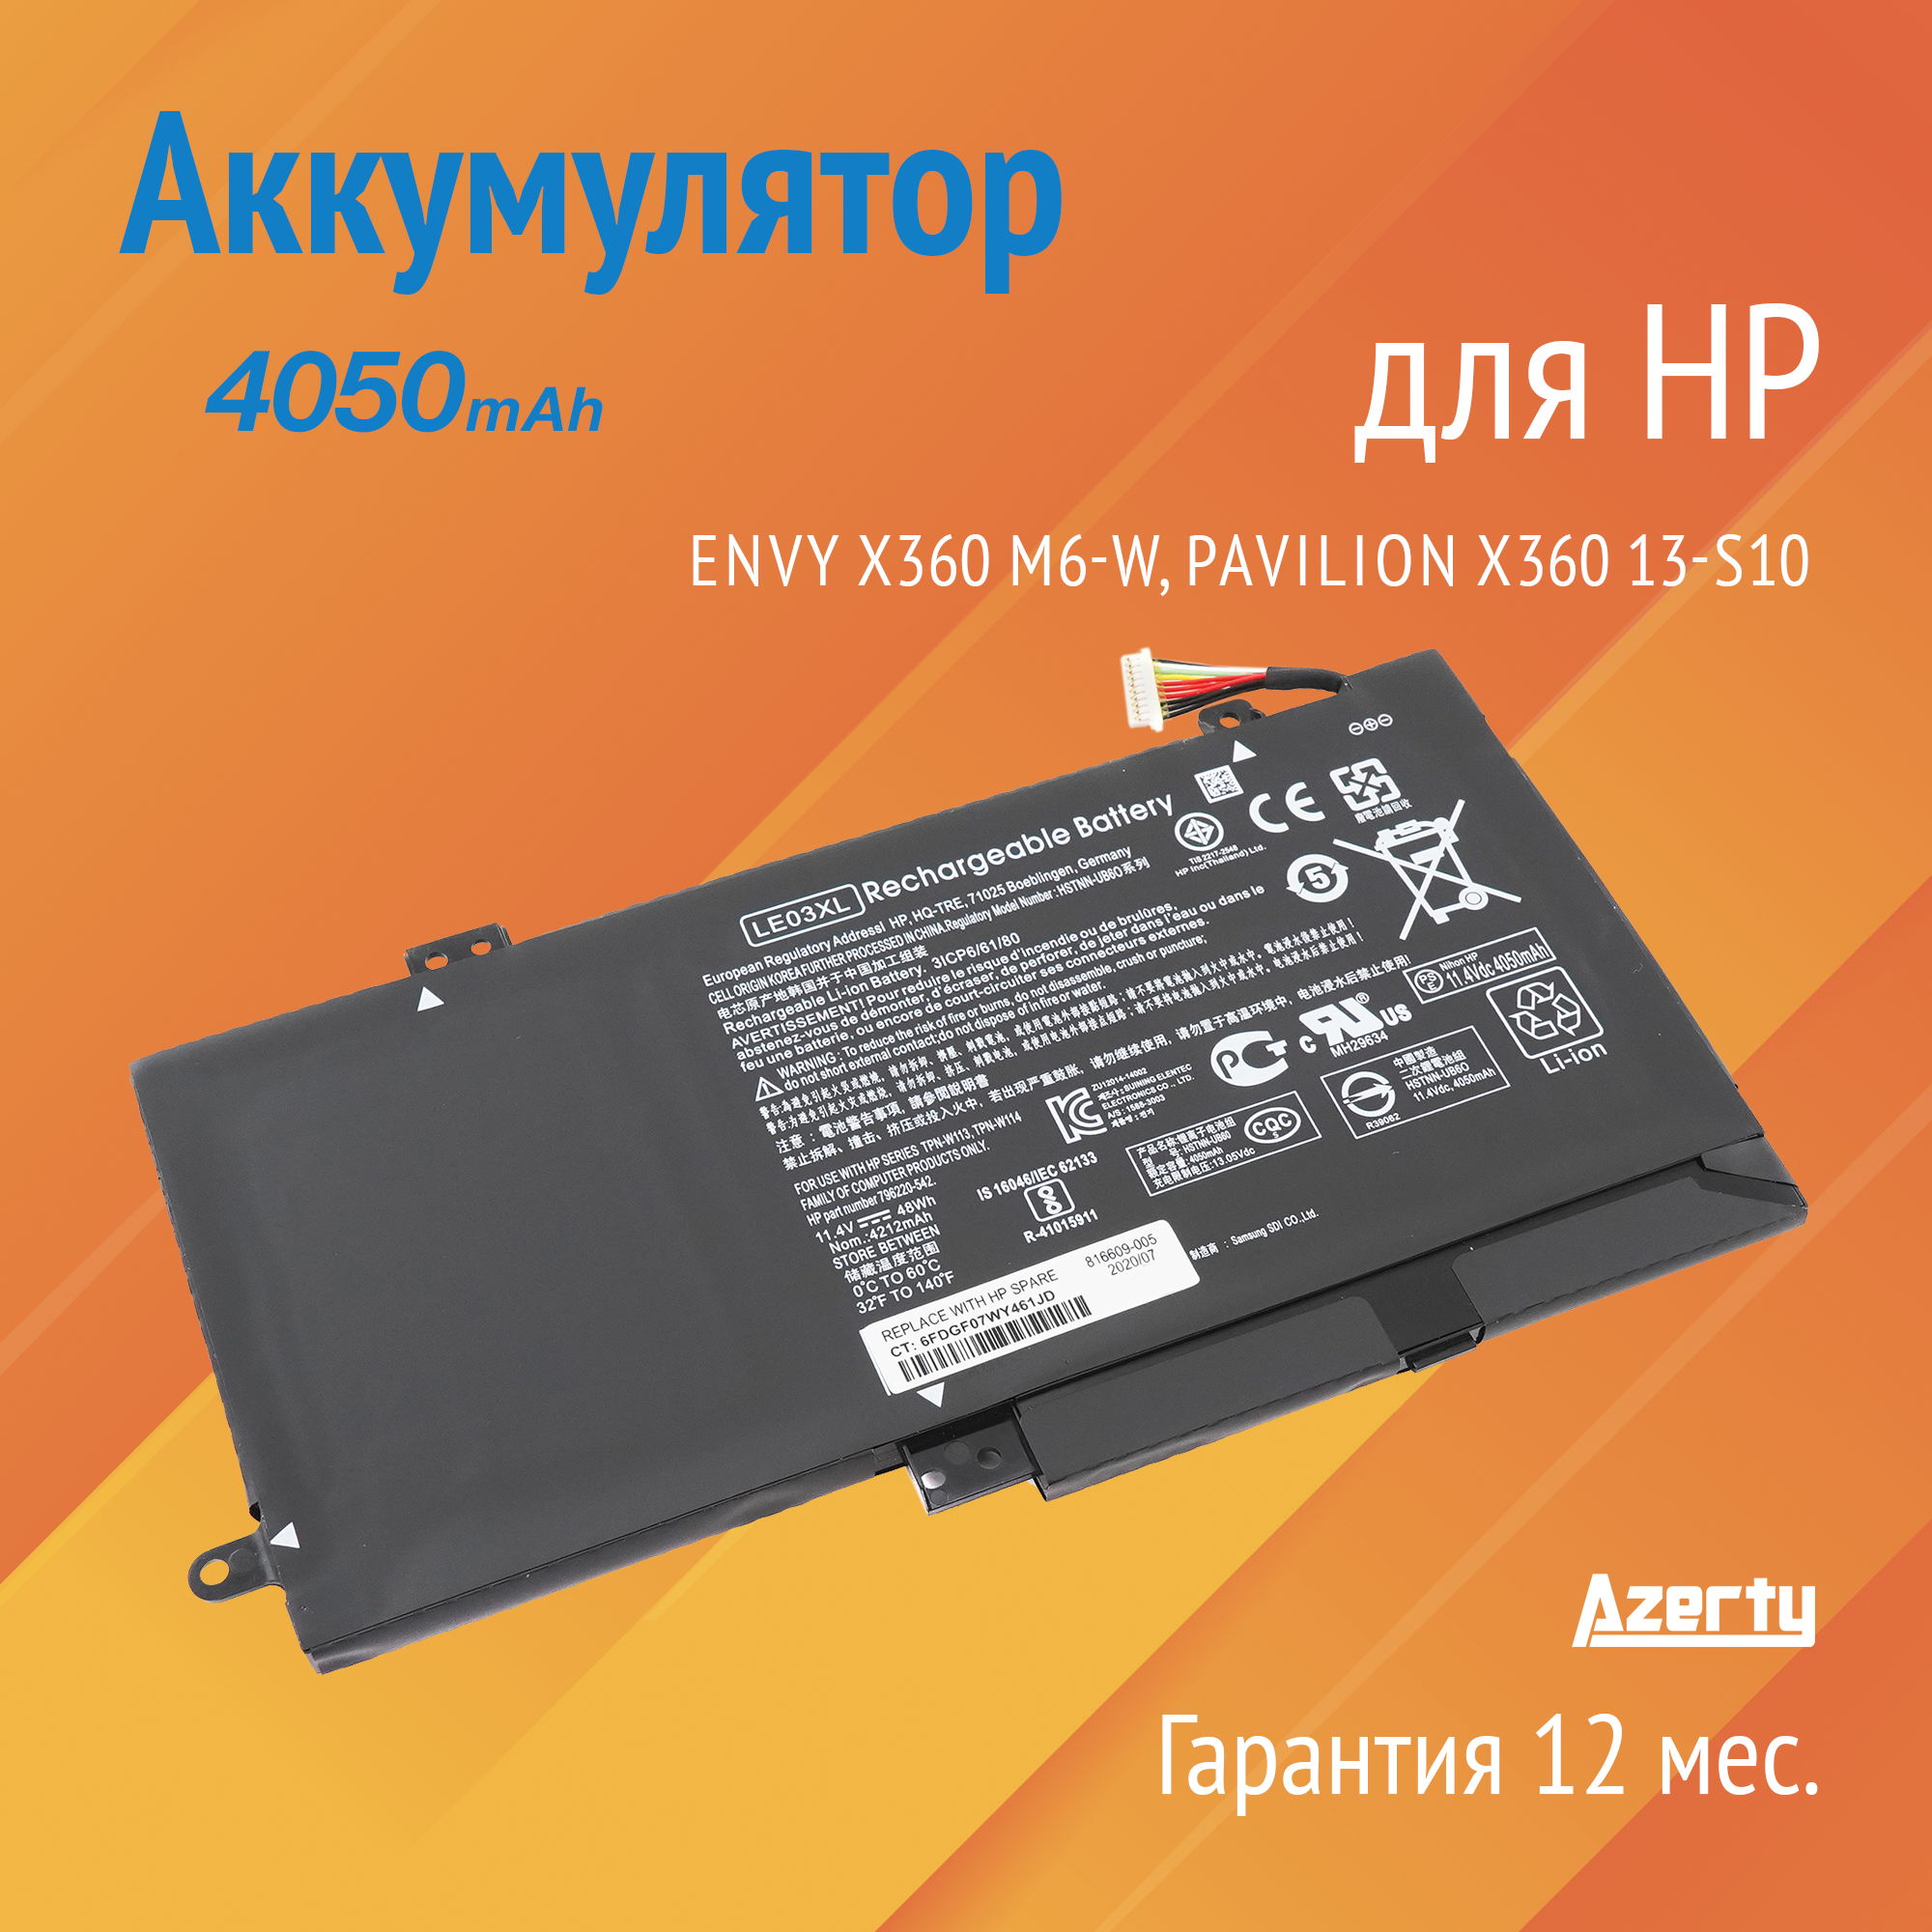 Аккумулятор LE03XL для HP Envy X360 M6-W / Pavilion X360 13-S100 / X360 15-BK (LE03, TPN-W113, 796356-005) 4050mAh